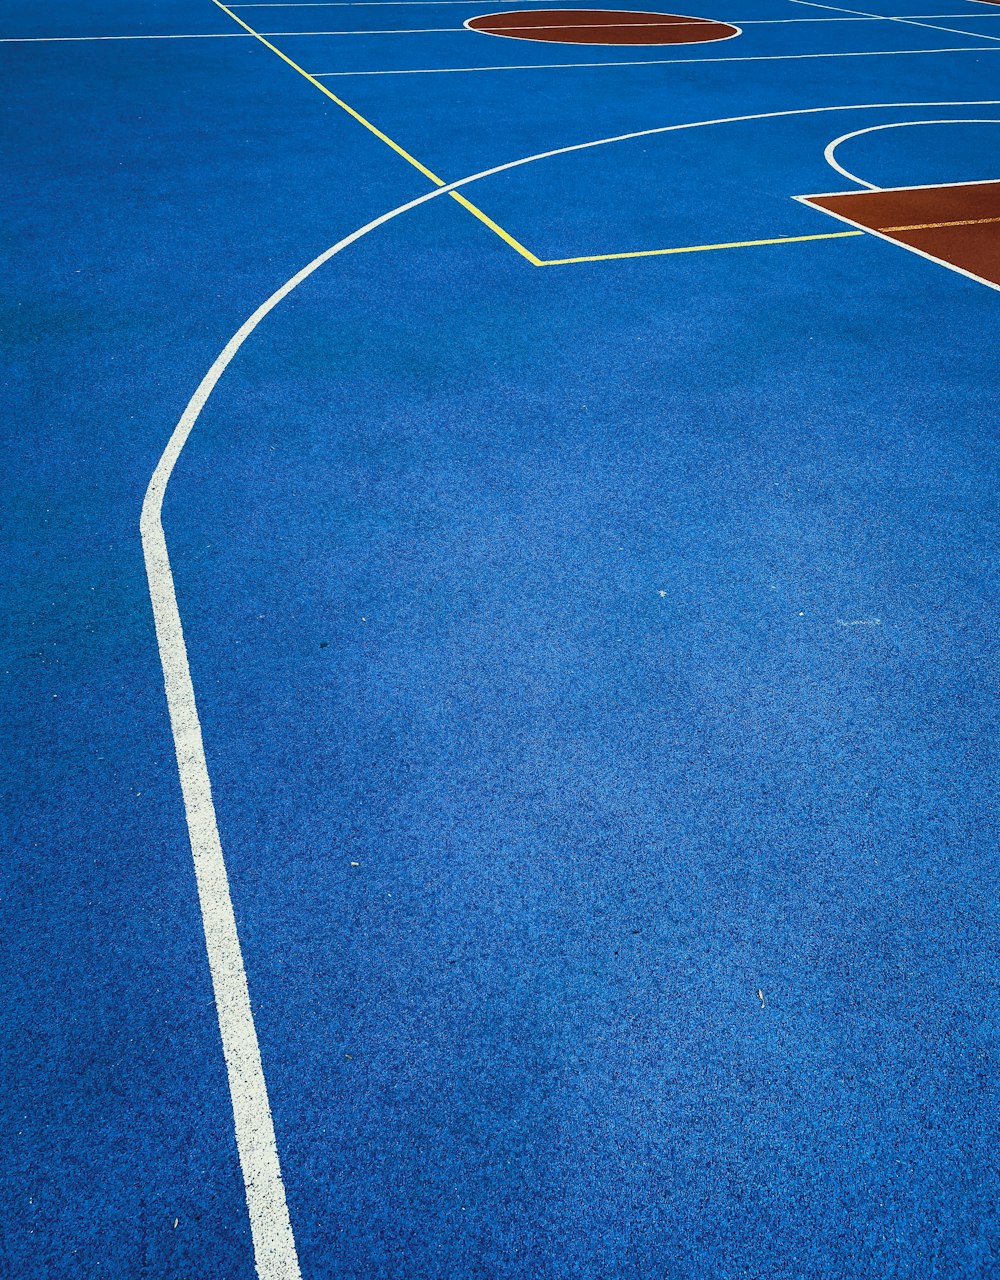 白い線が入った青いバスケットボールコート